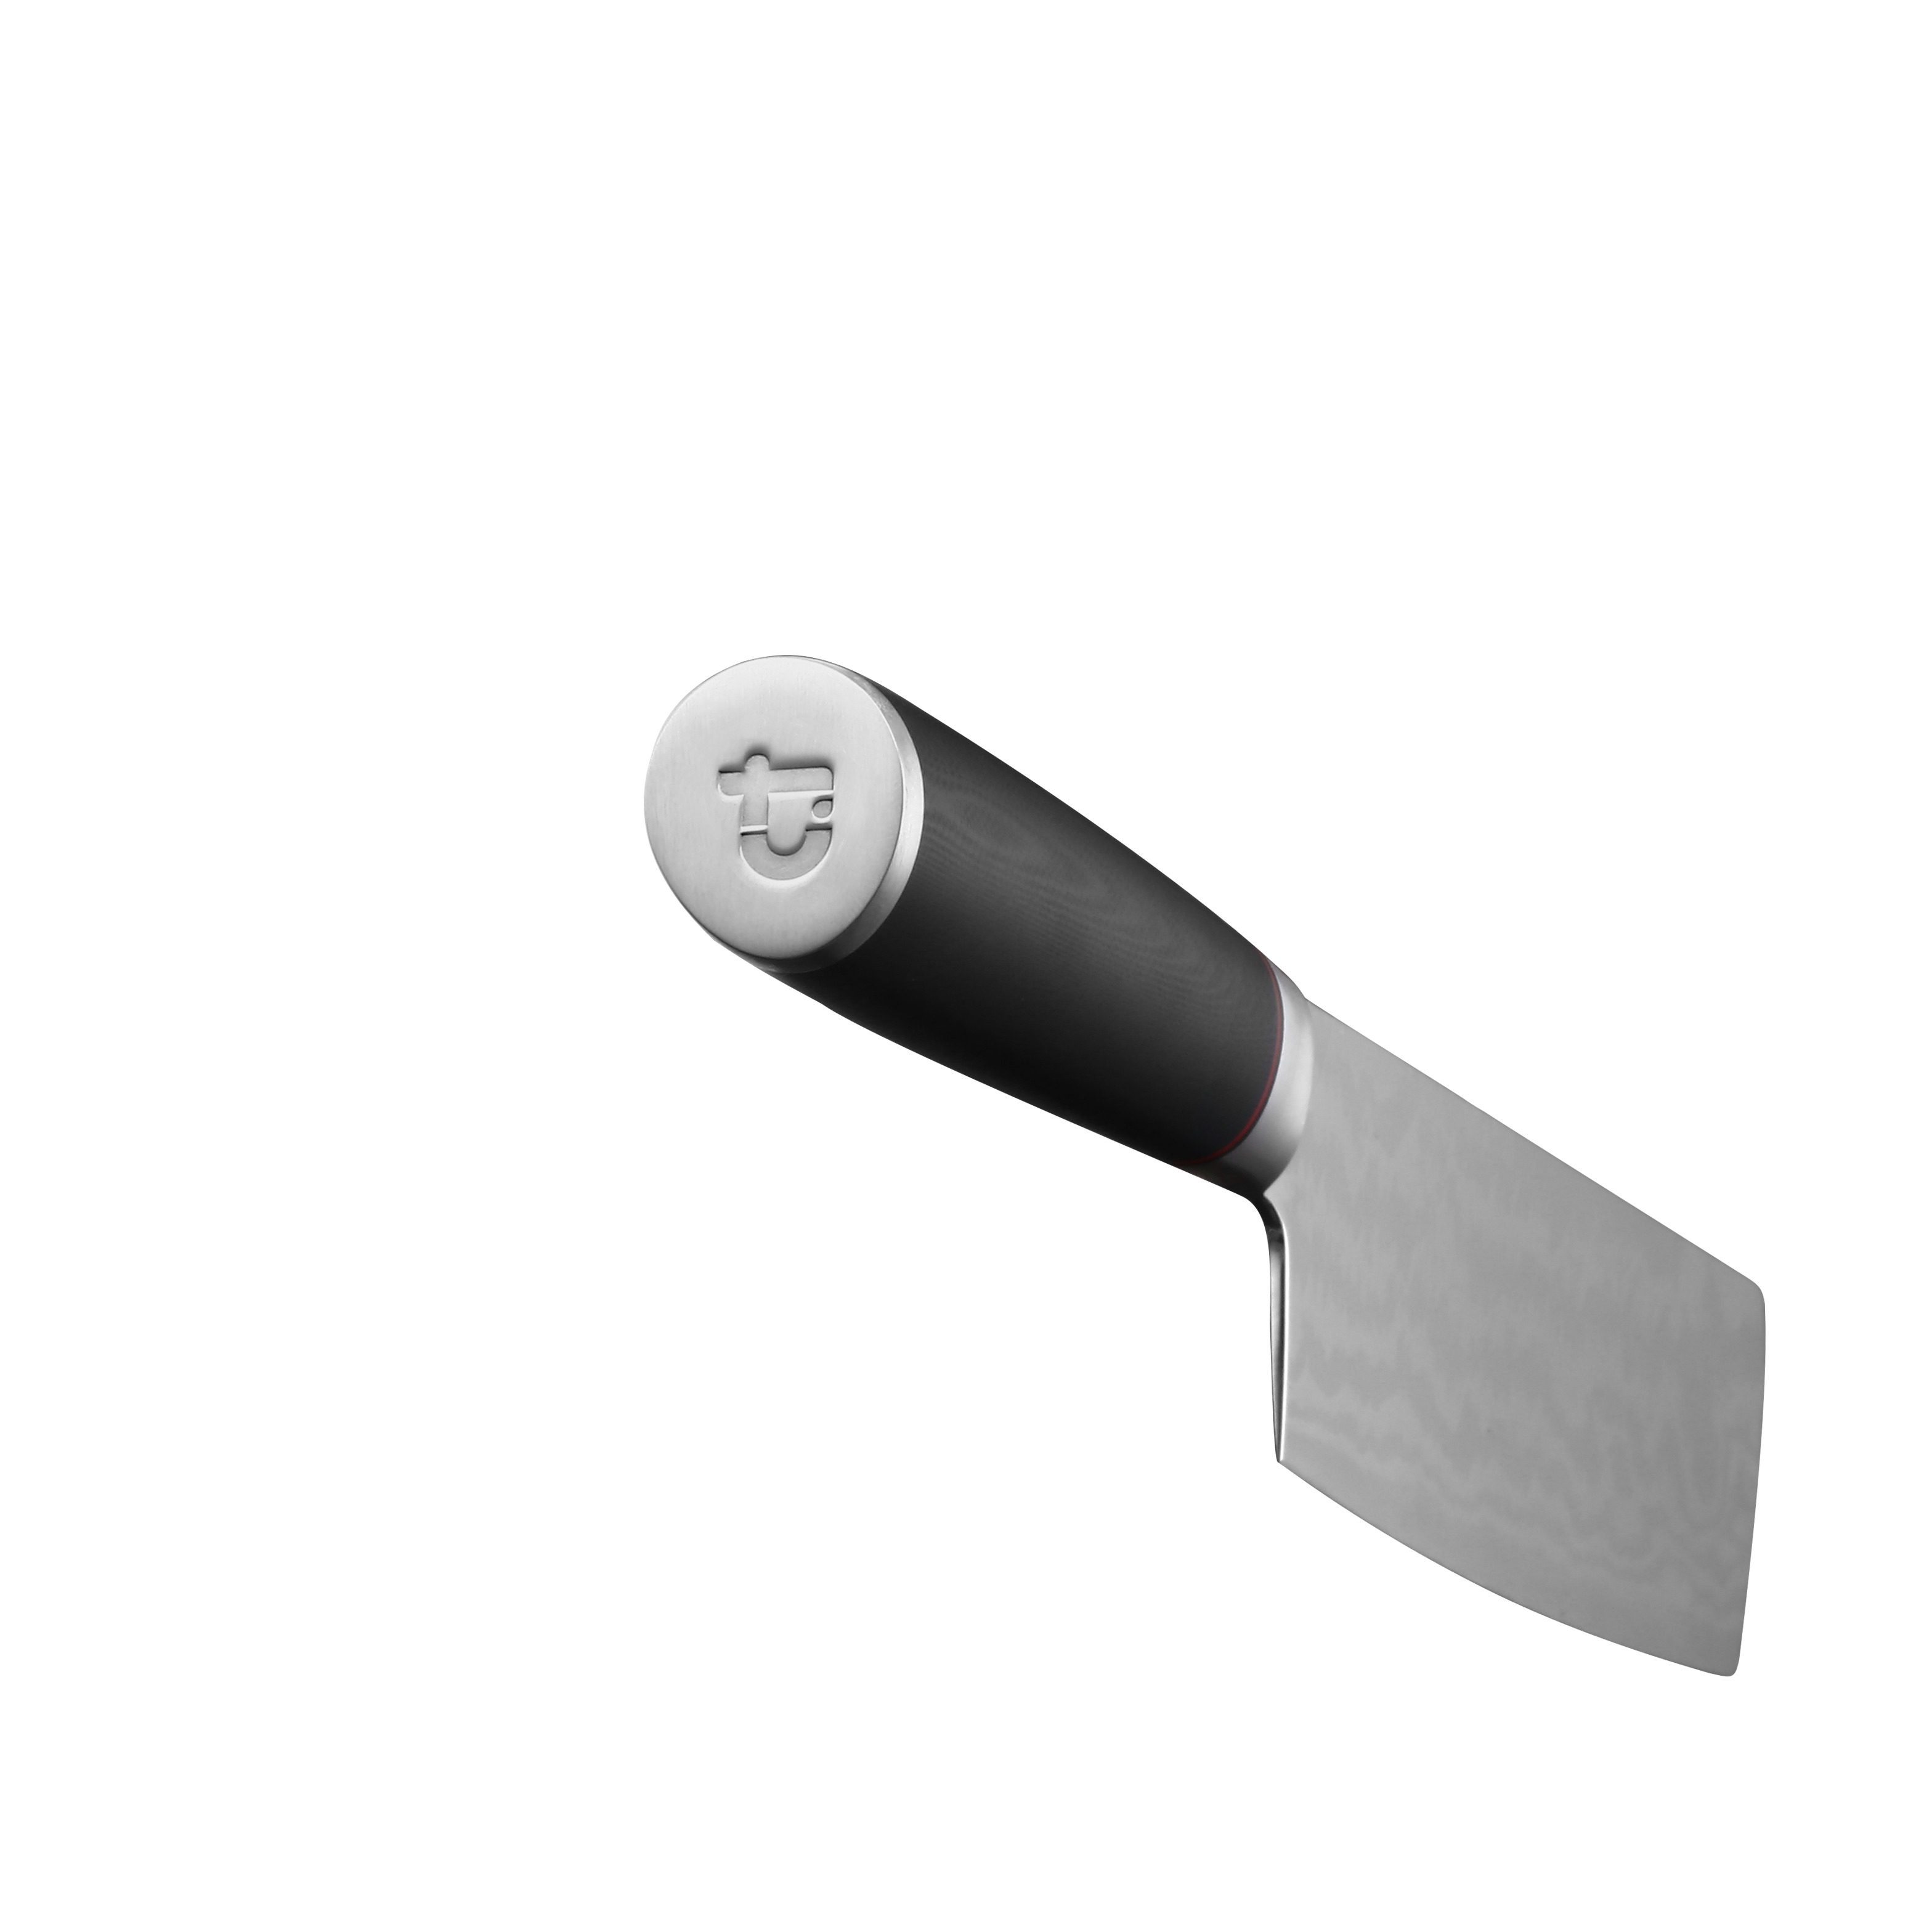 Ножи tuotown купить. Нож кухонный TUOTOWN dm003, сталь VG-10. Цай Дао нож. TUOTOWN ножи кухонные. Нож для нарезки овощей шинковачный (топор 2 лезвия) ЛБ-125/120.